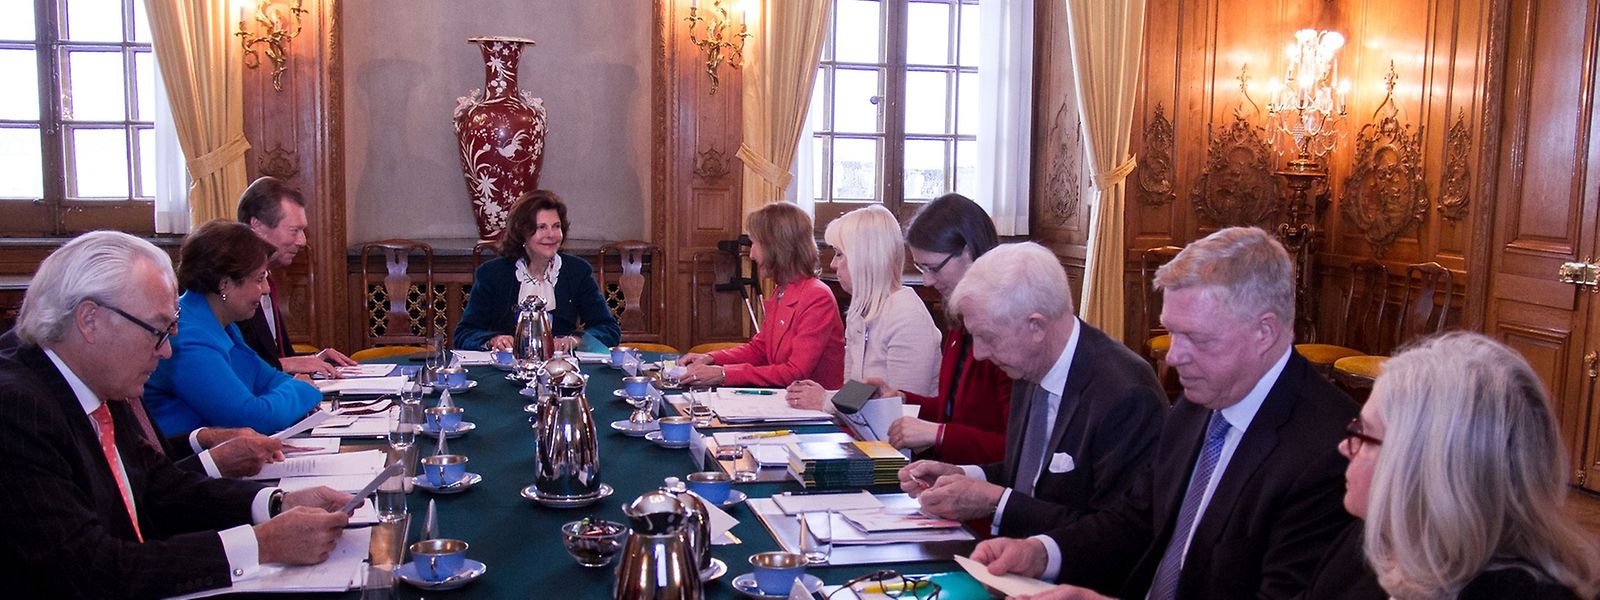 Königin Silvia präsidierte die Sitzung.